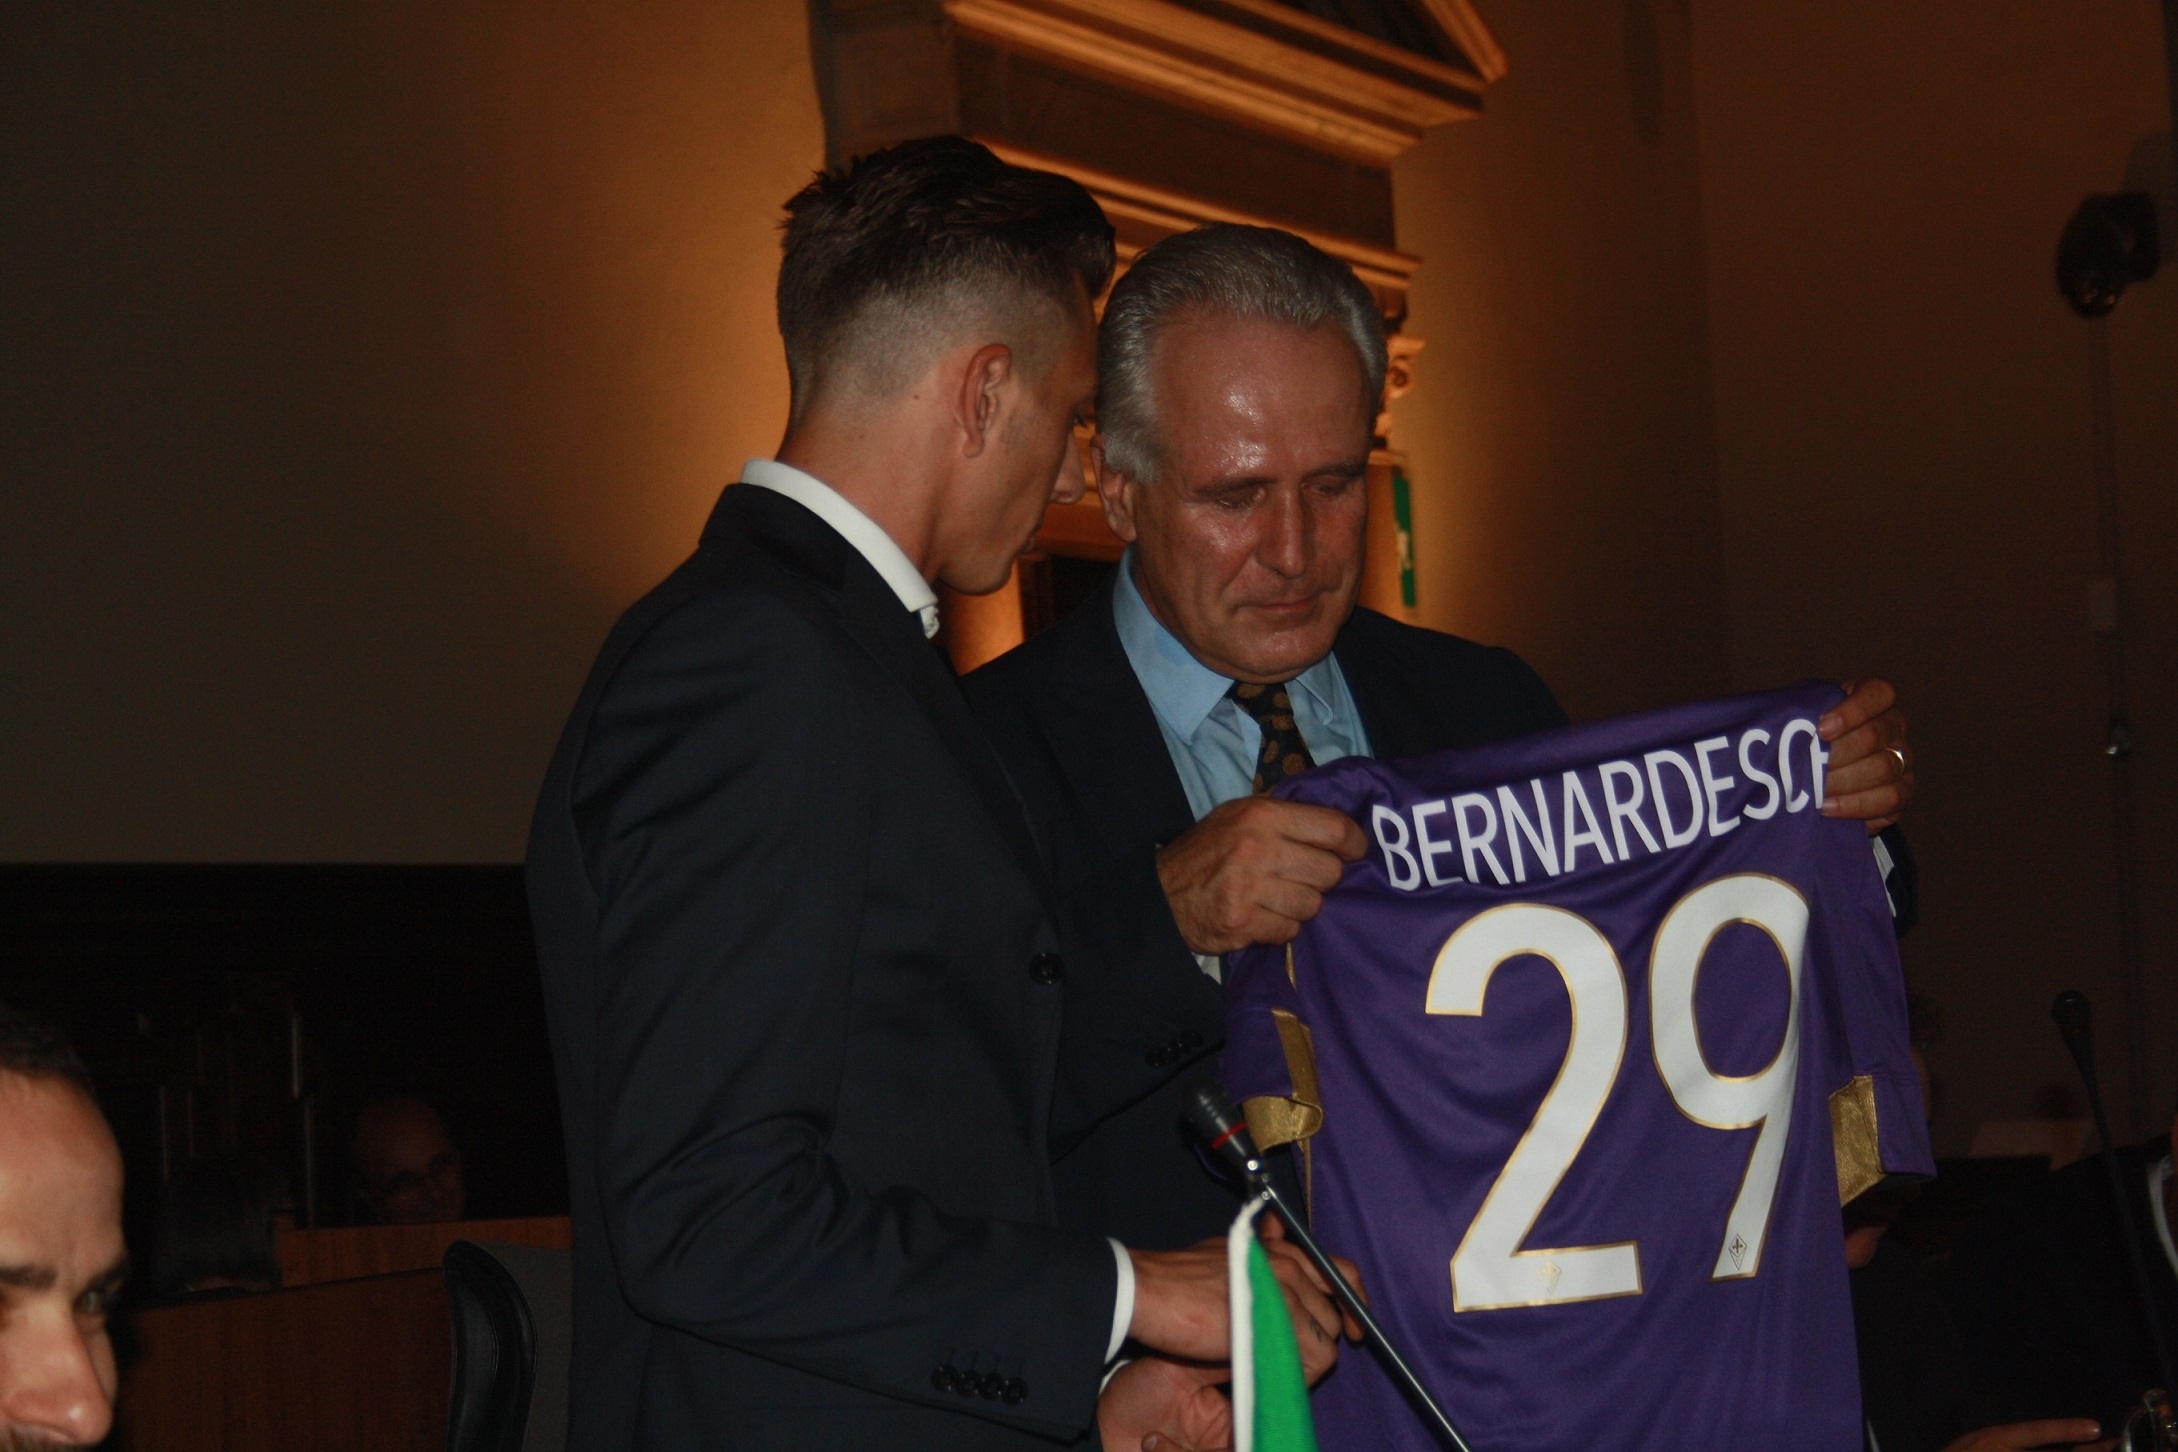 L'attaccante viola Federico Bernardeschi dona la maglia n.29 a Eugenio Giani